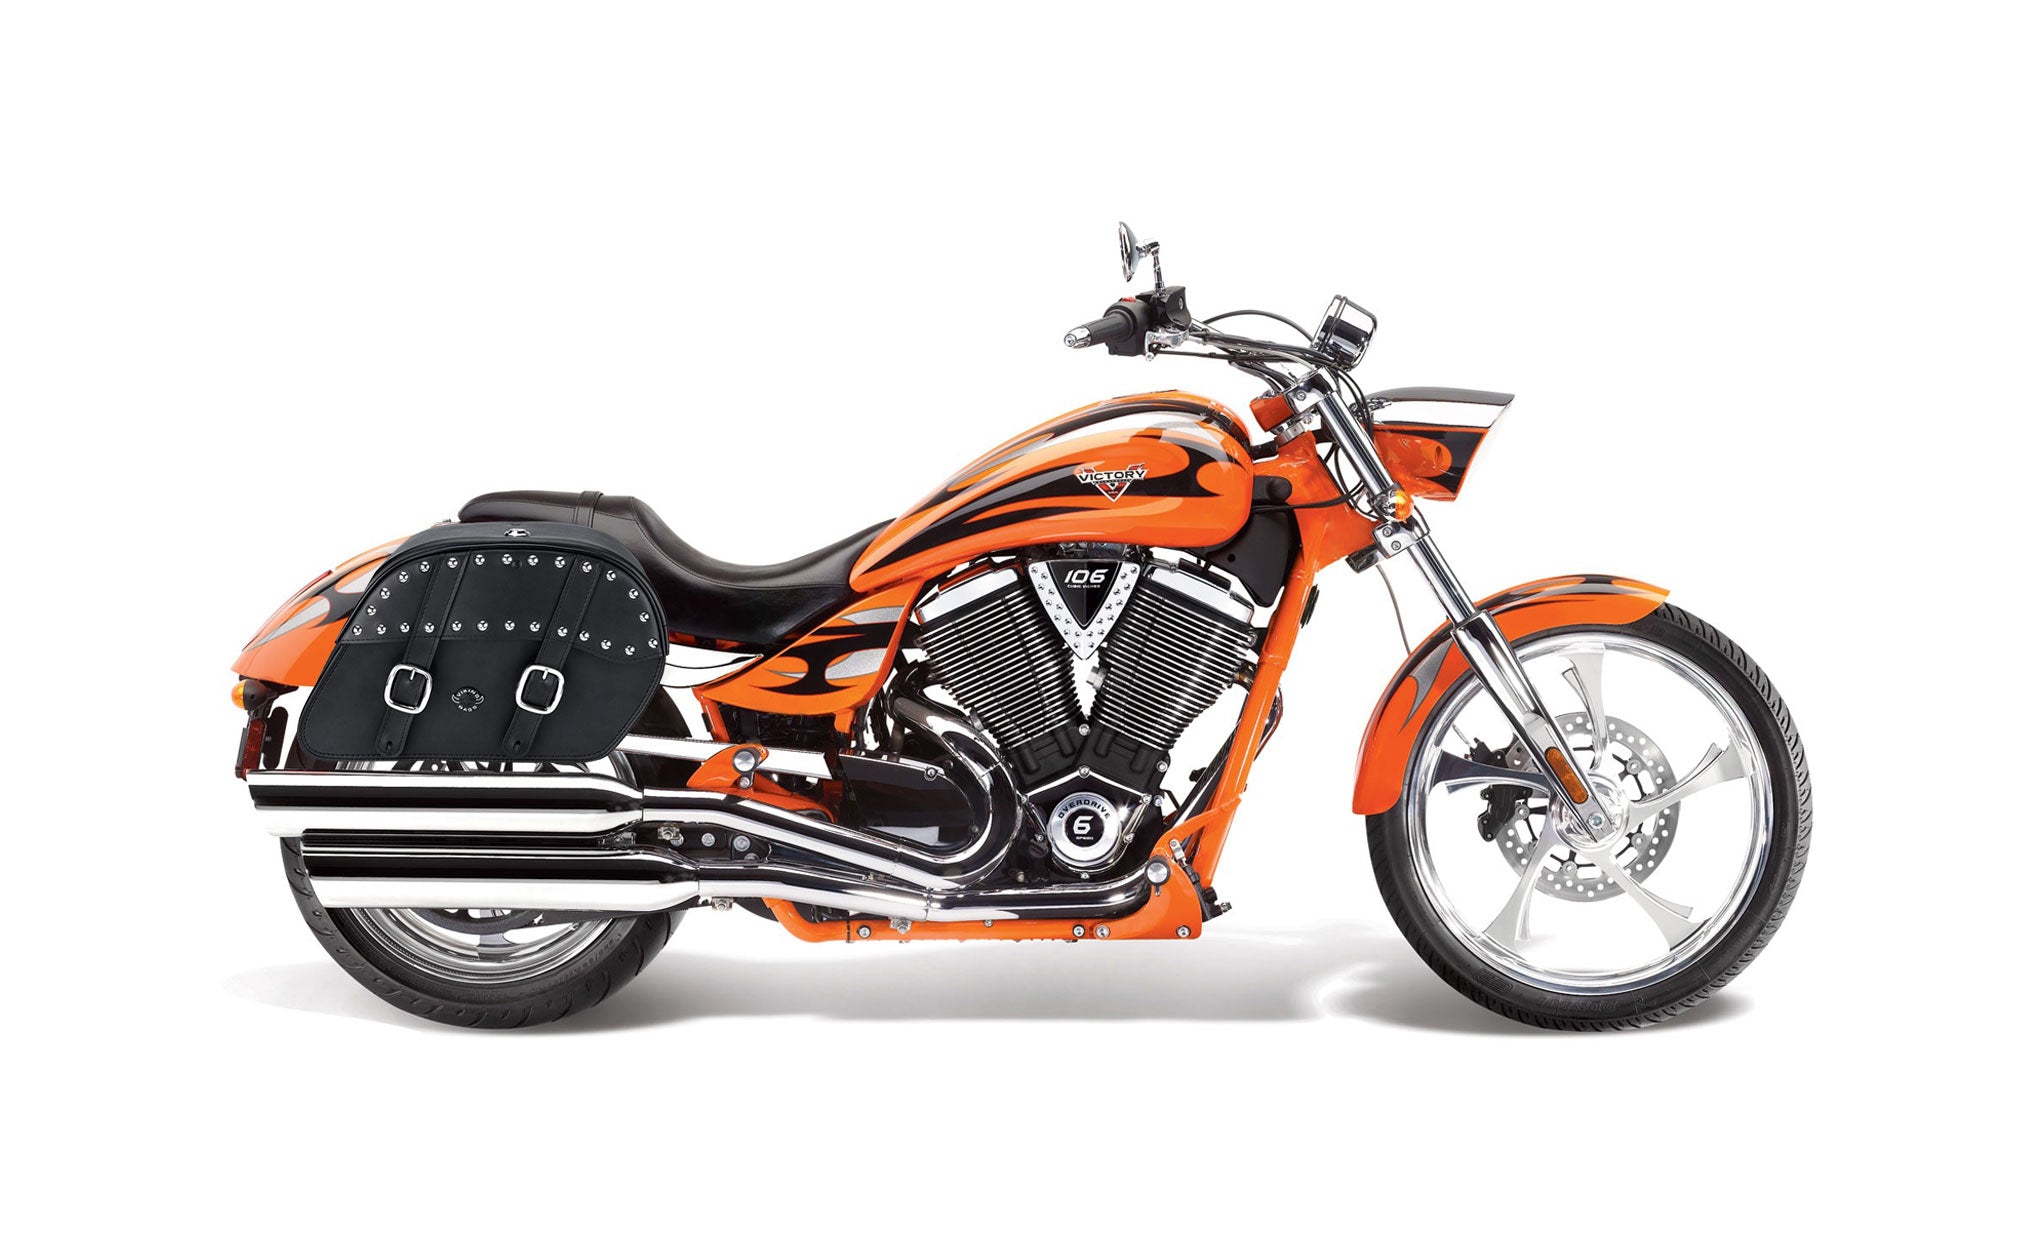 Viking Skarner Large Victory Jackpot Leather Studded Motorcycle Saddlebags on Bike Photo @expand